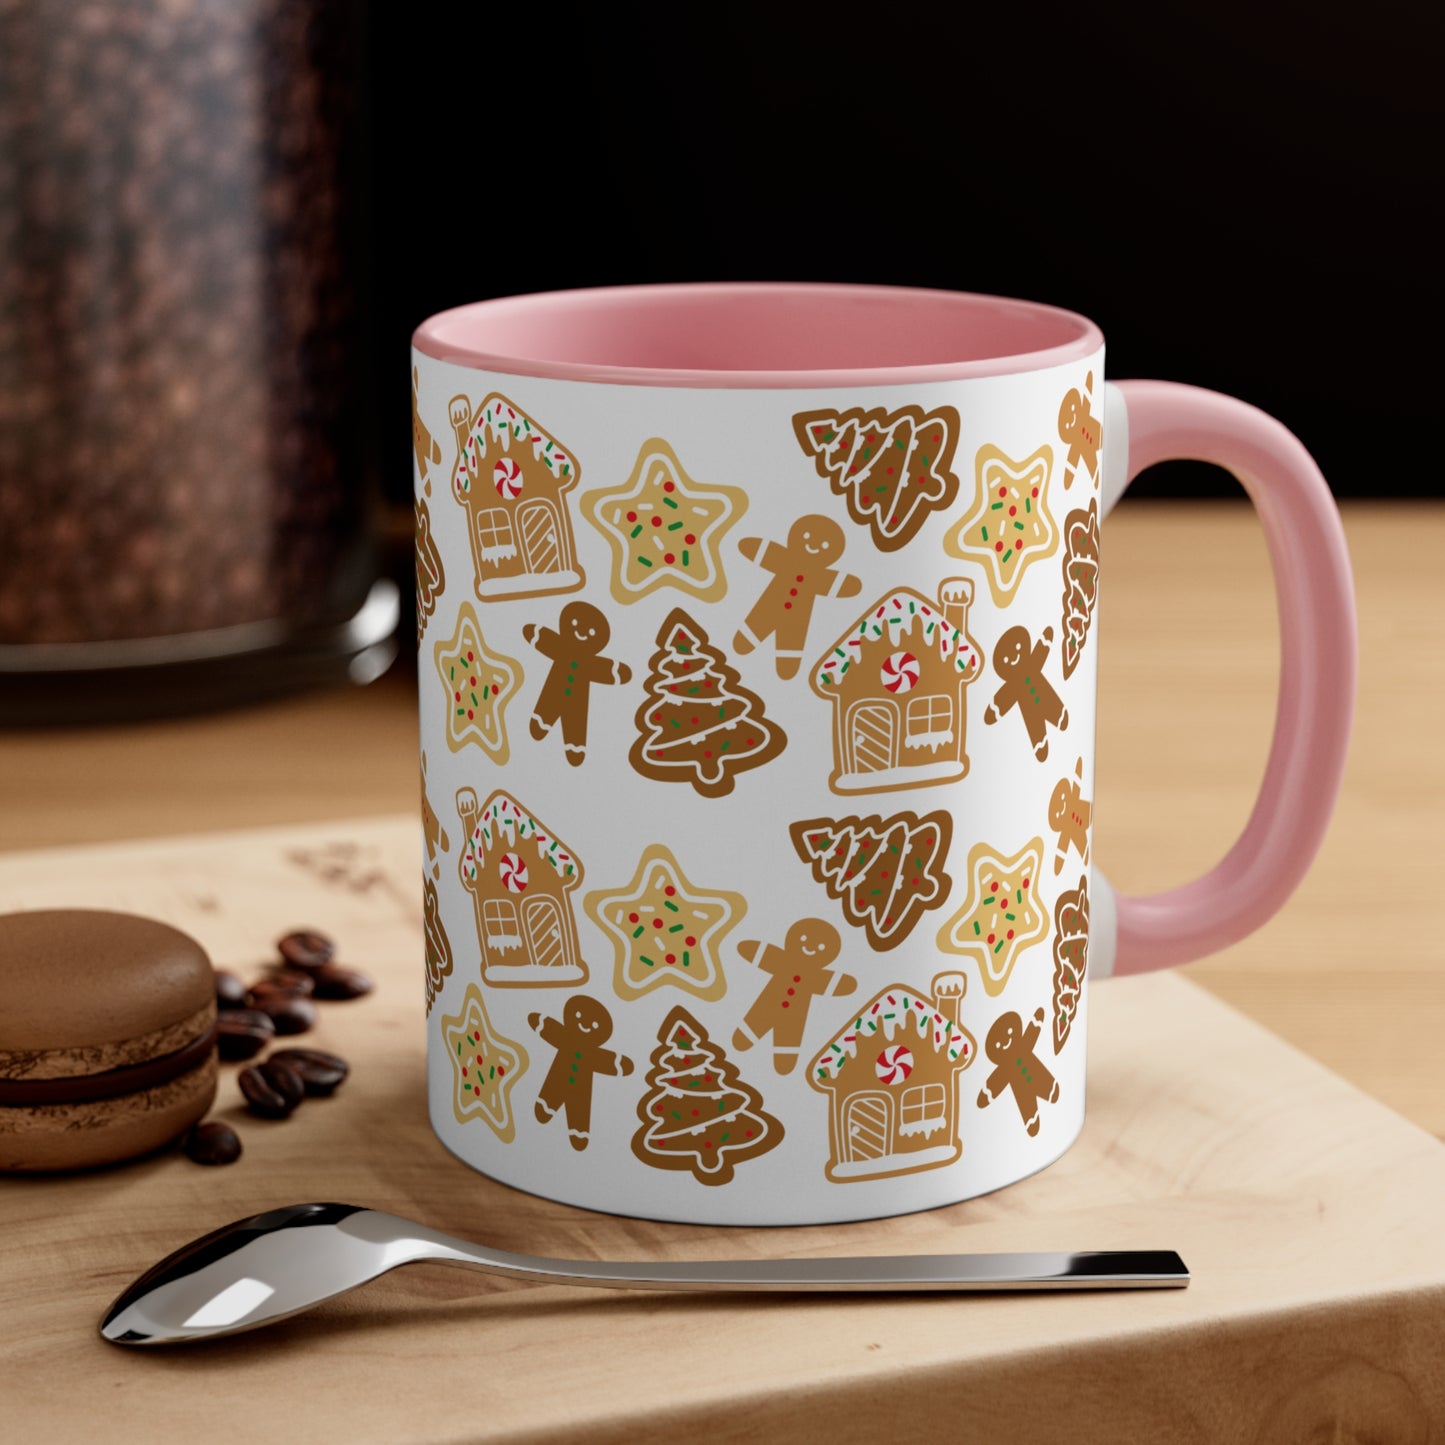 Gingerbread man Coffee Mug, 11oz for holiday season and Christmas lovers